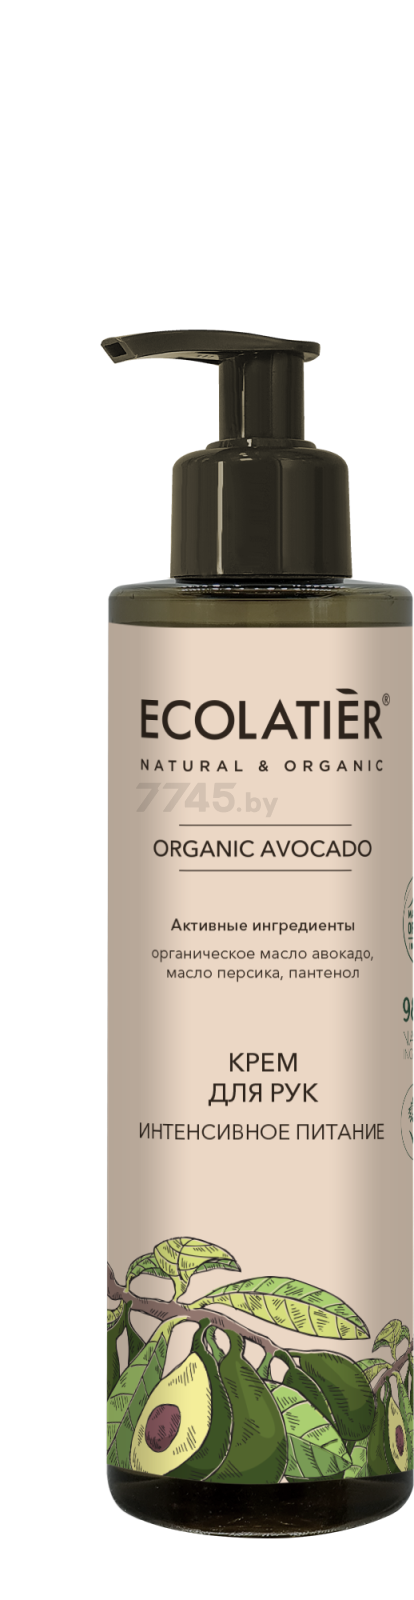 Крем для рук ECOLATIER Organic Avocado Интенсивное питание 200 мл (4620046174075)